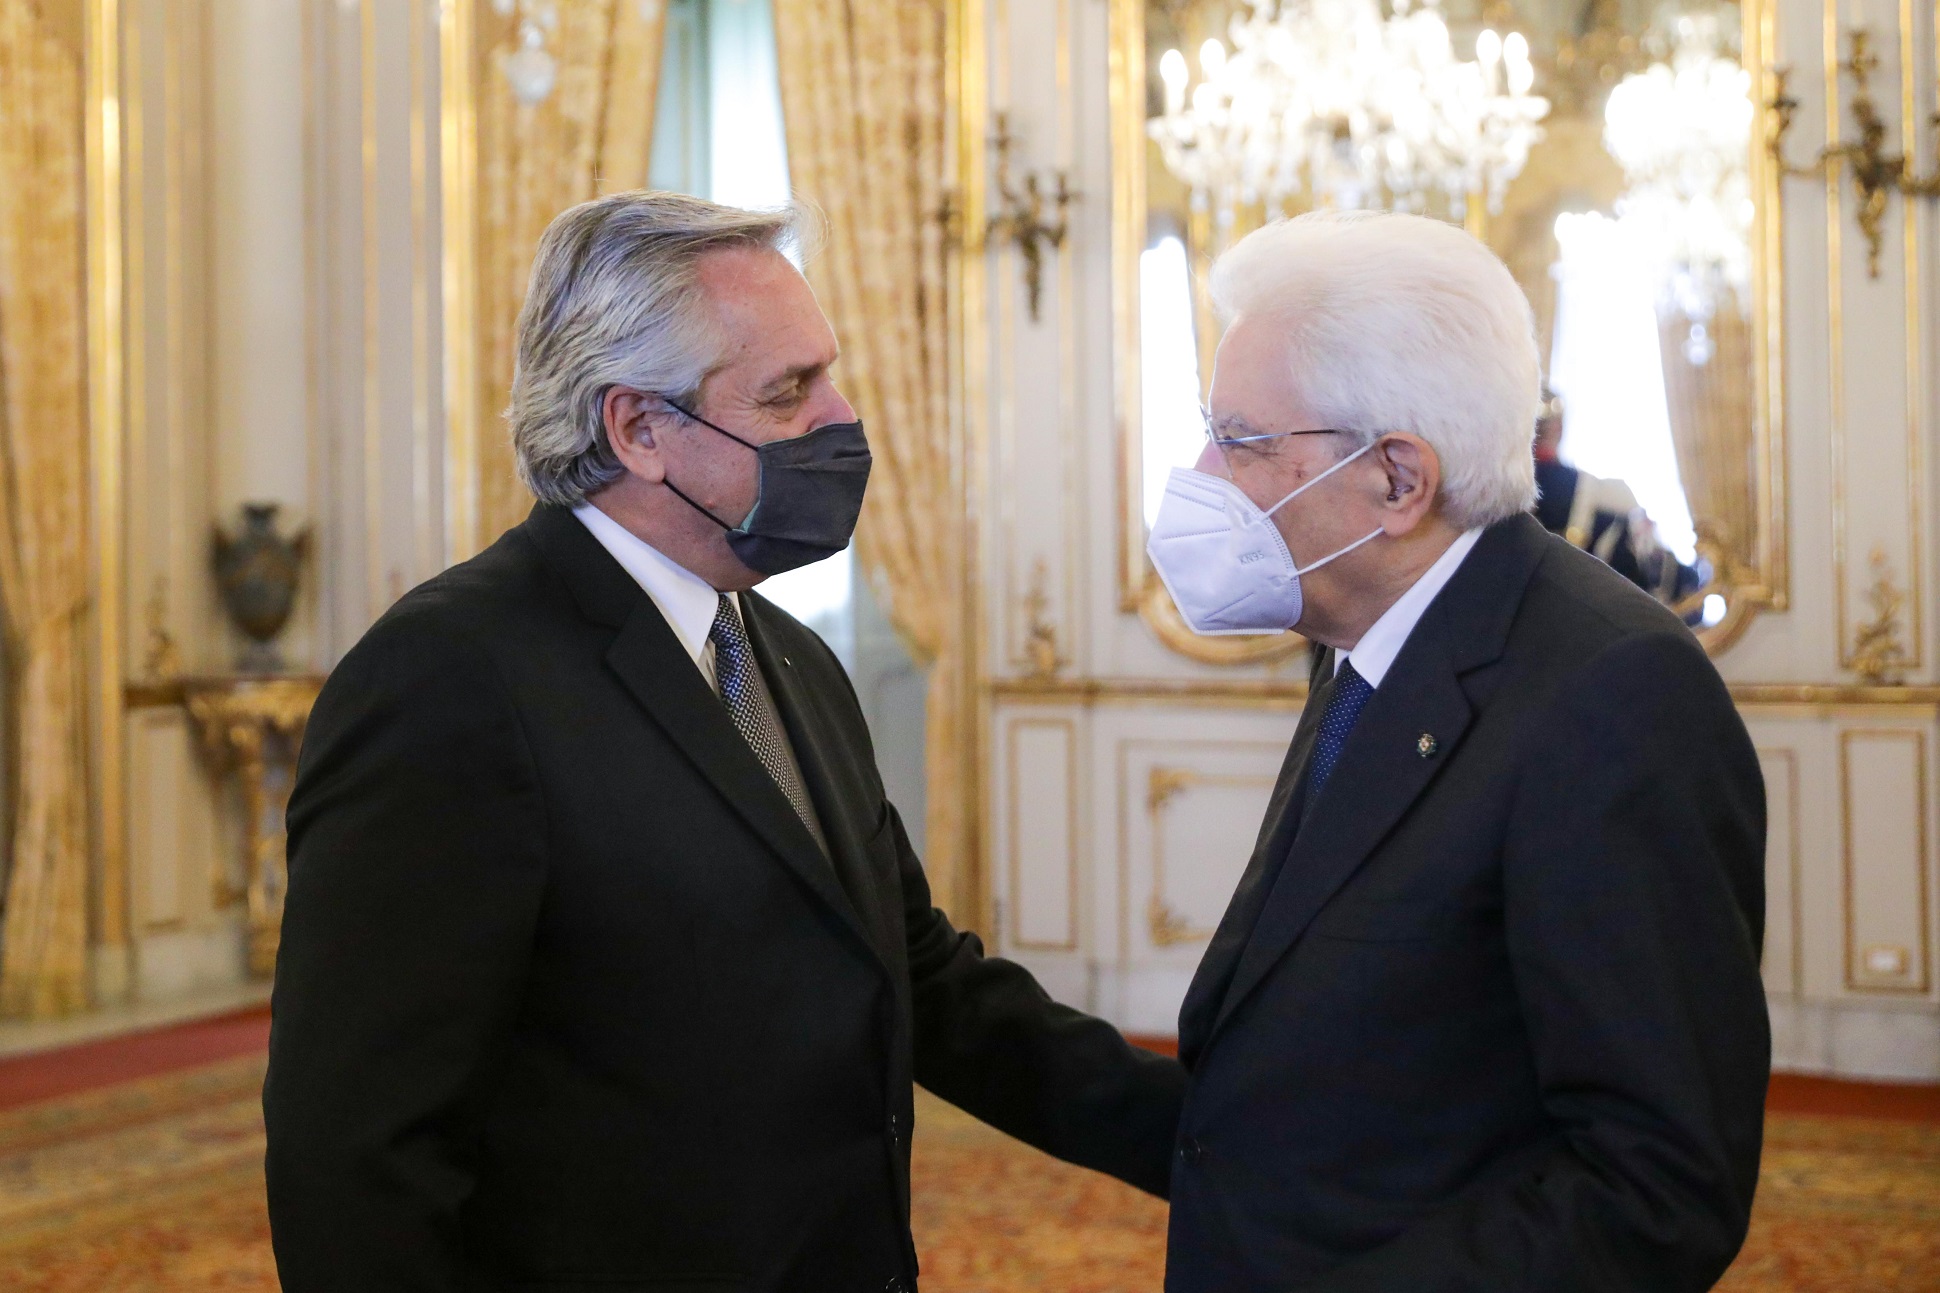 El presidente Alberto Fernández se reunió con su par de Italia Sergio Mattarella en el Palacio del Quirinal